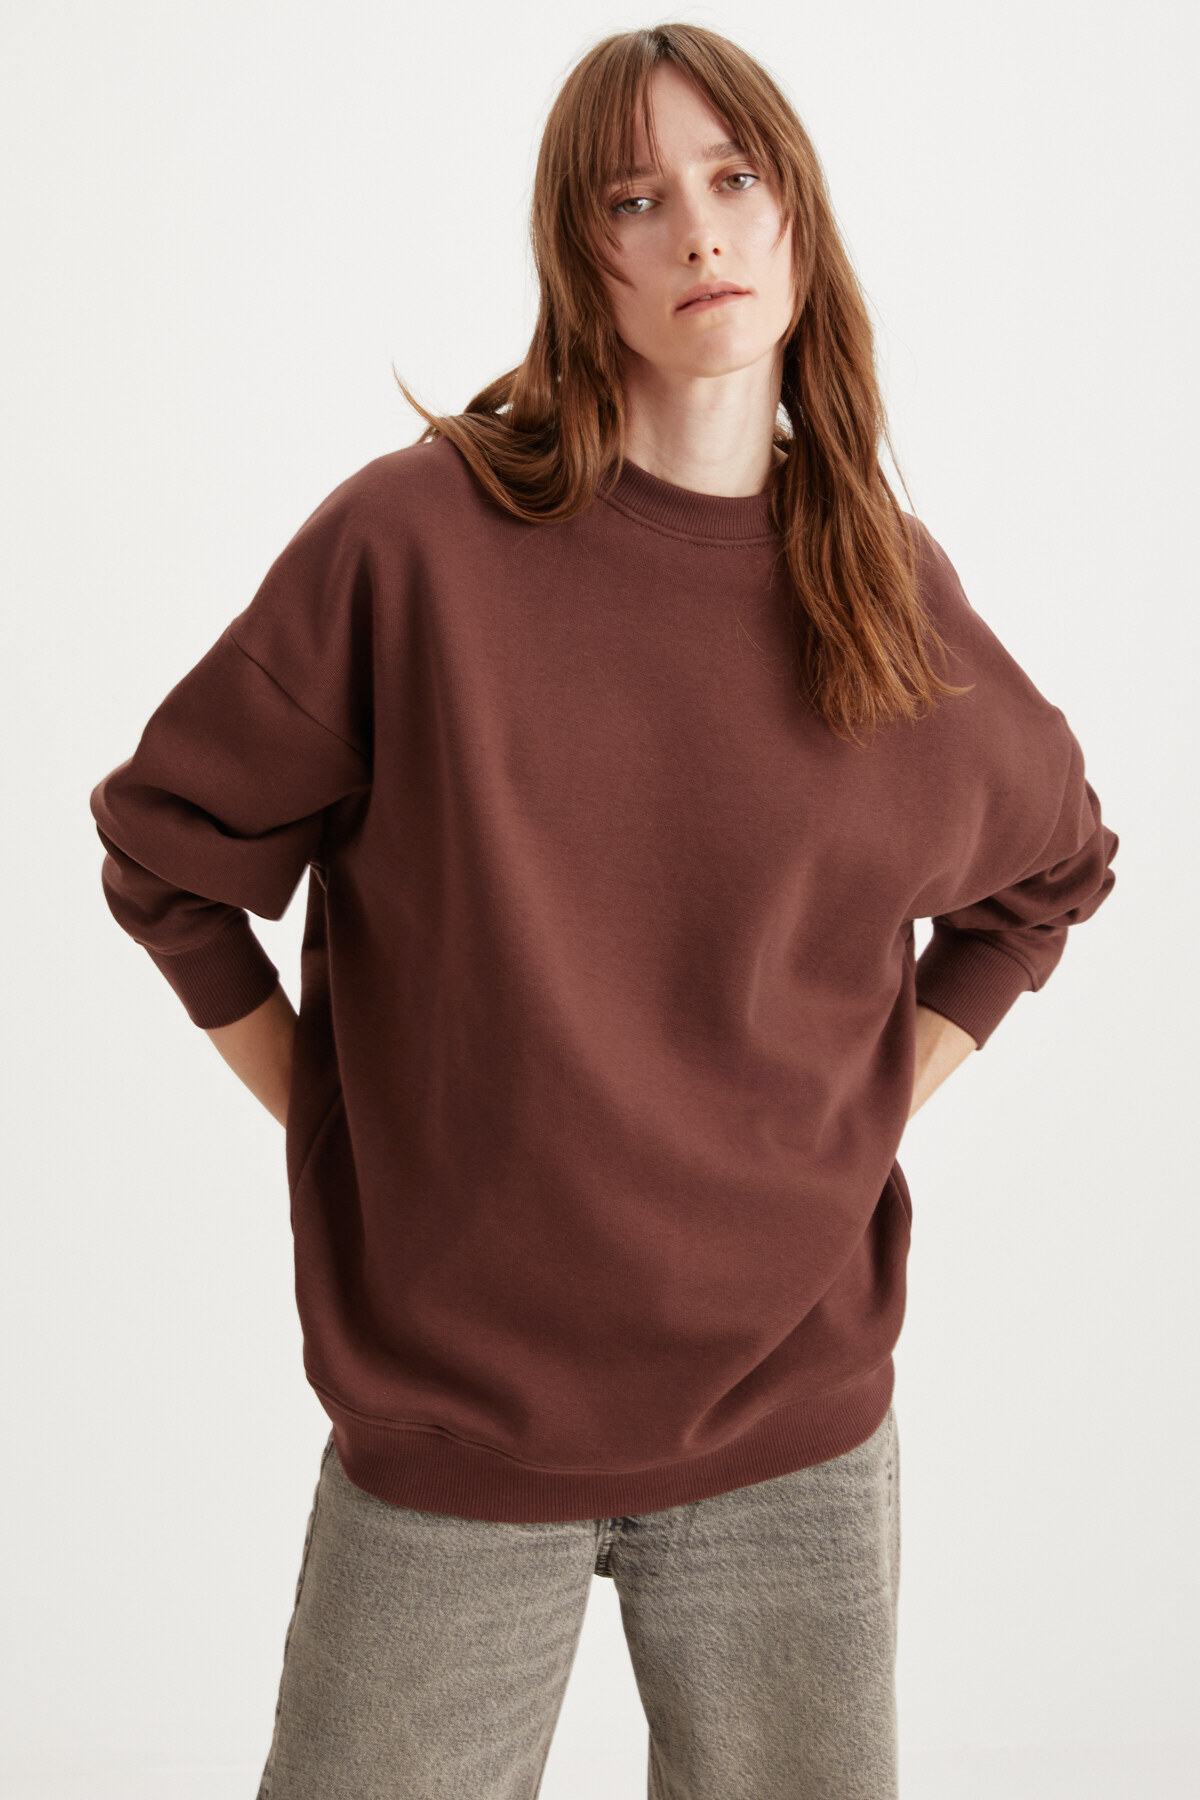 Levně GRIMELANGE Allys Women's Crew Neck Oversize Basic Brown Sweatshirt